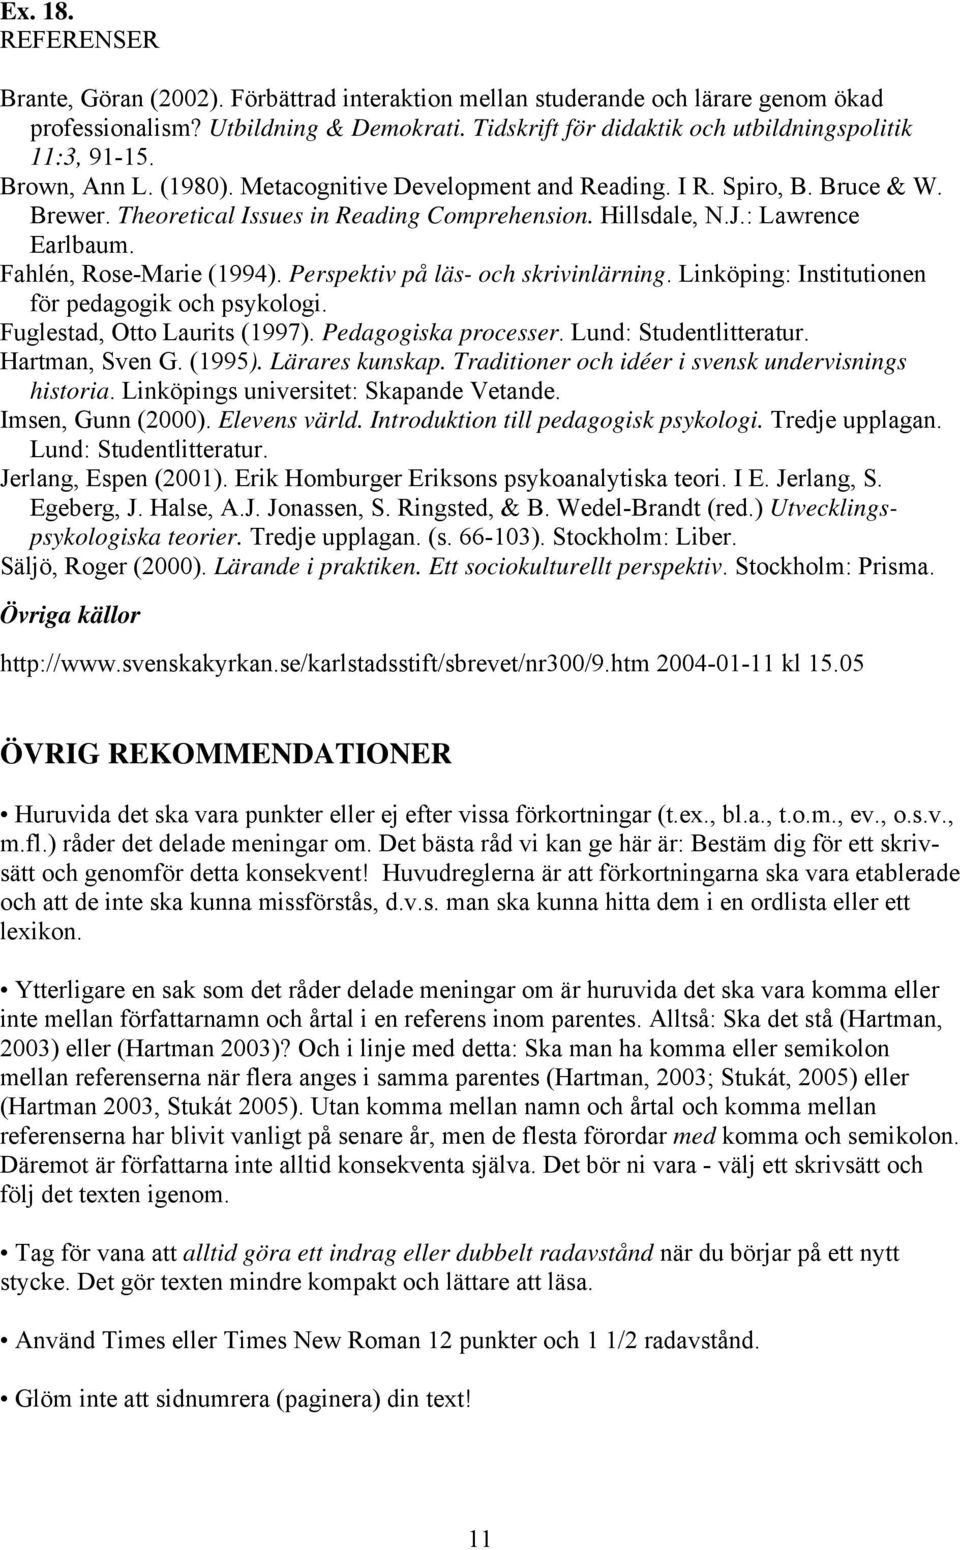 Hillsdale, N.J.: Lawrence Earlbaum. Fahlén, Rose-Marie (1994). Perspektiv på läs- och skrivinlärning. Linköping: Institutionen för pedagogik och psykologi. Fuglestad, Otto Laurits (1997).